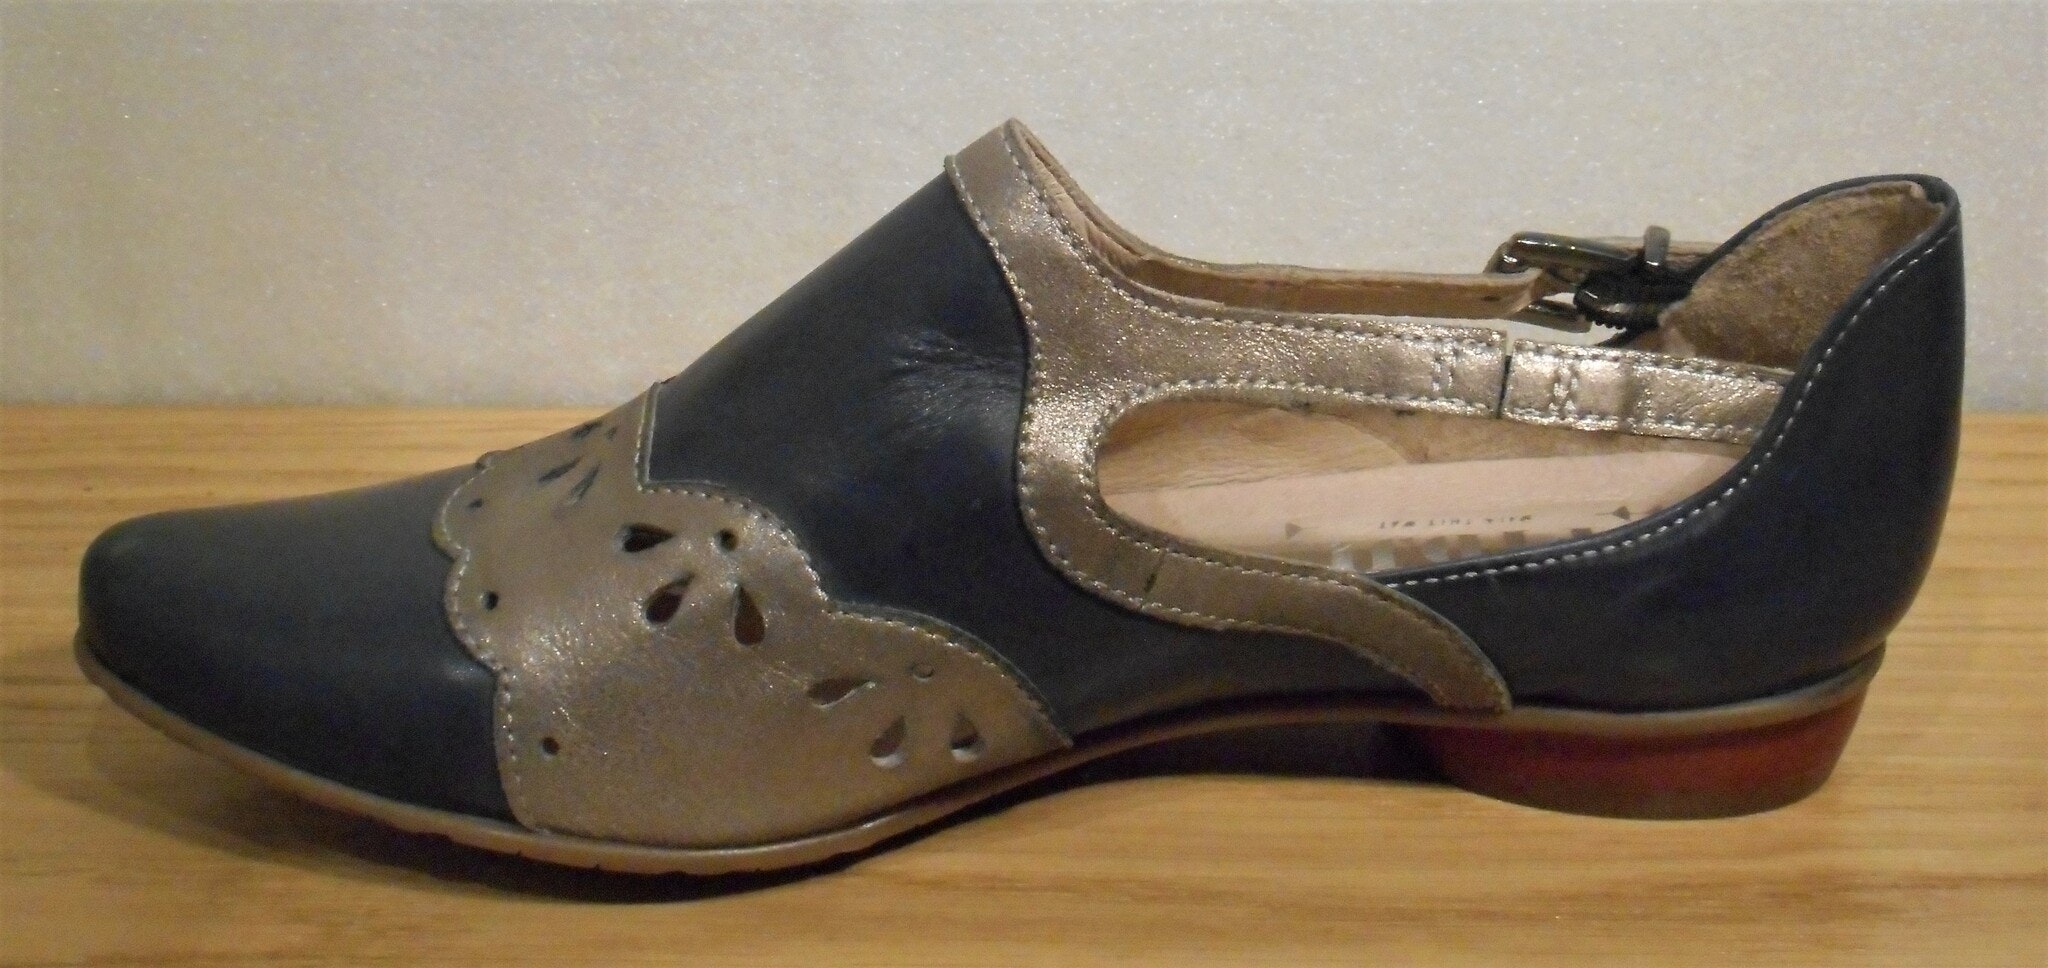 Blå/silver sko med hålmönster - fabrikat Fidji